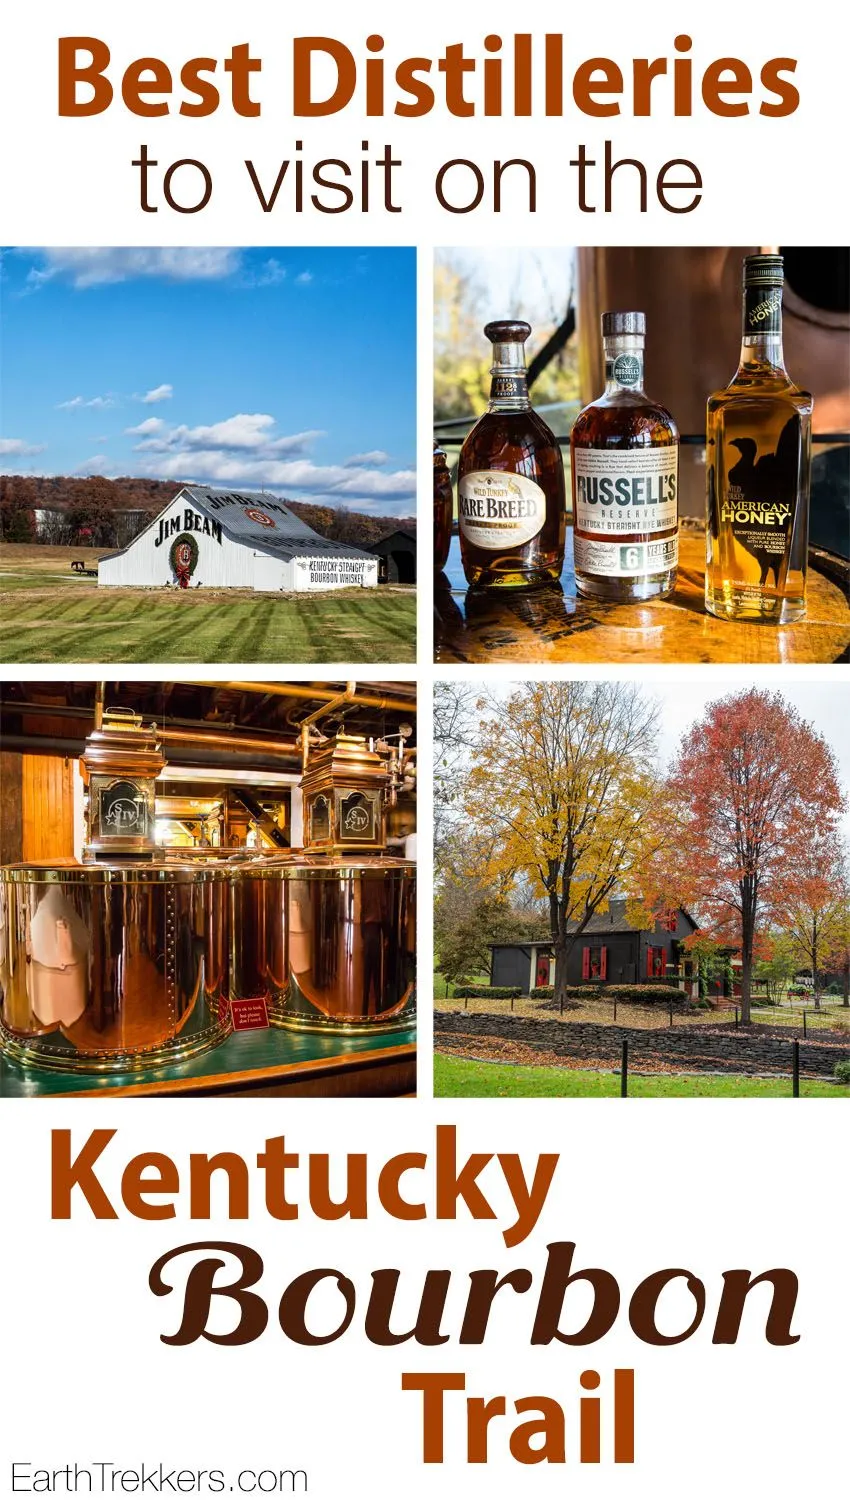 Kentucky Bourbon Trail best distilleries